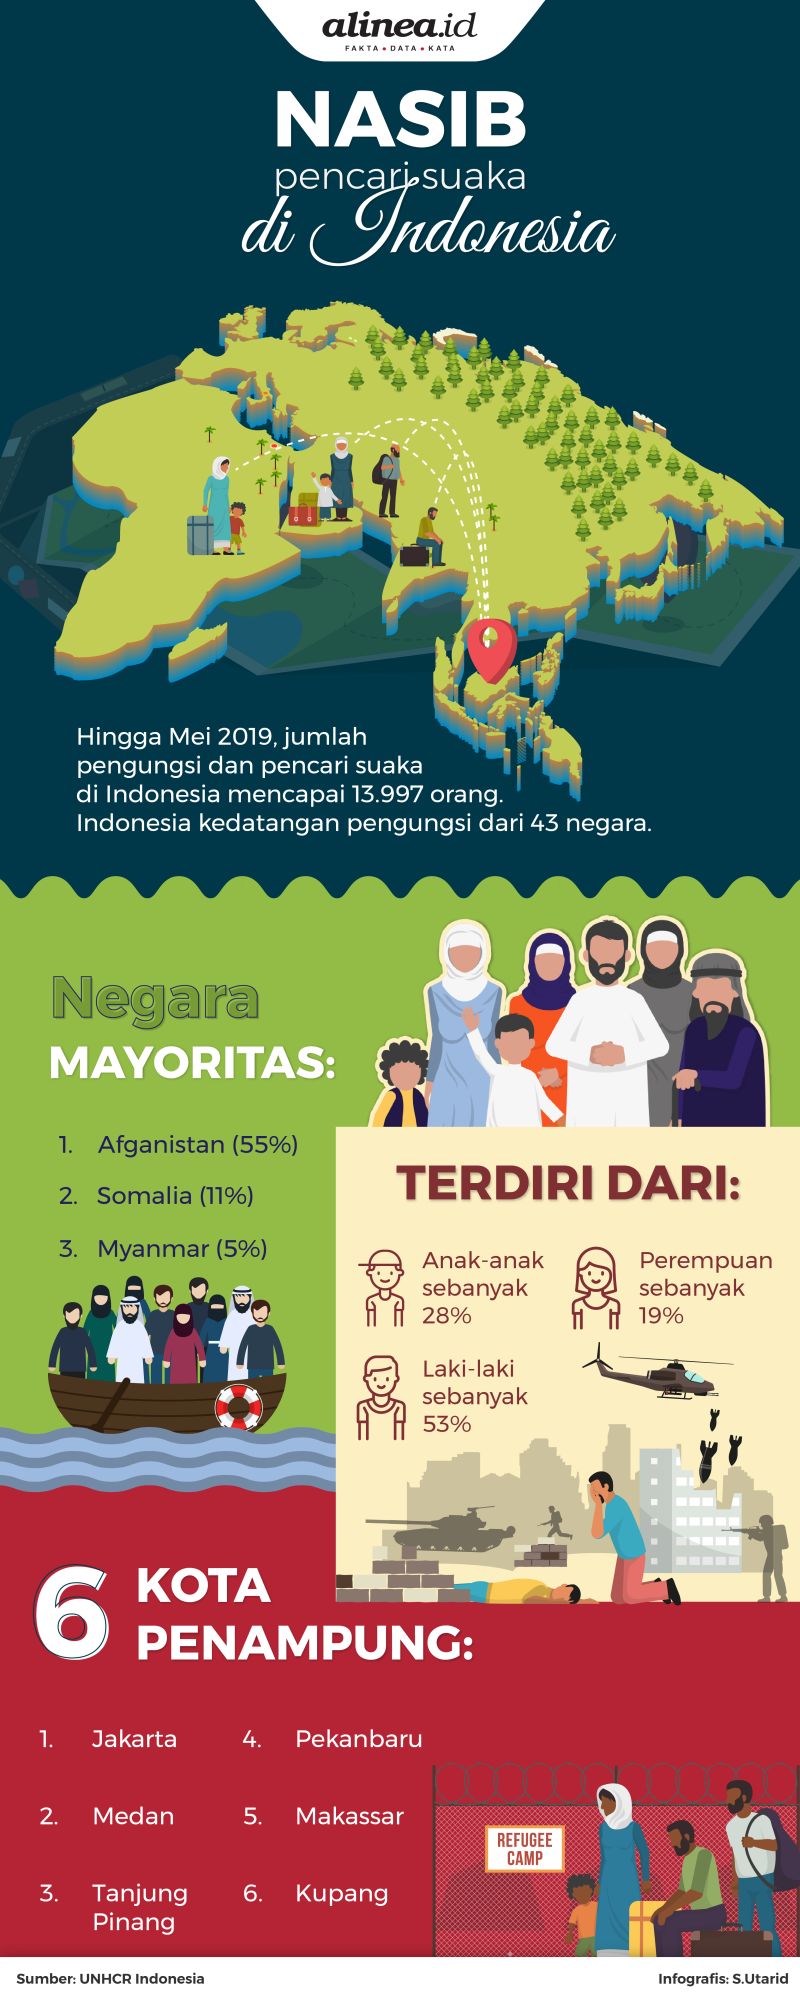 Mayoritas pencari suaka yang ada di Indonesia berasal dari Afganistan.